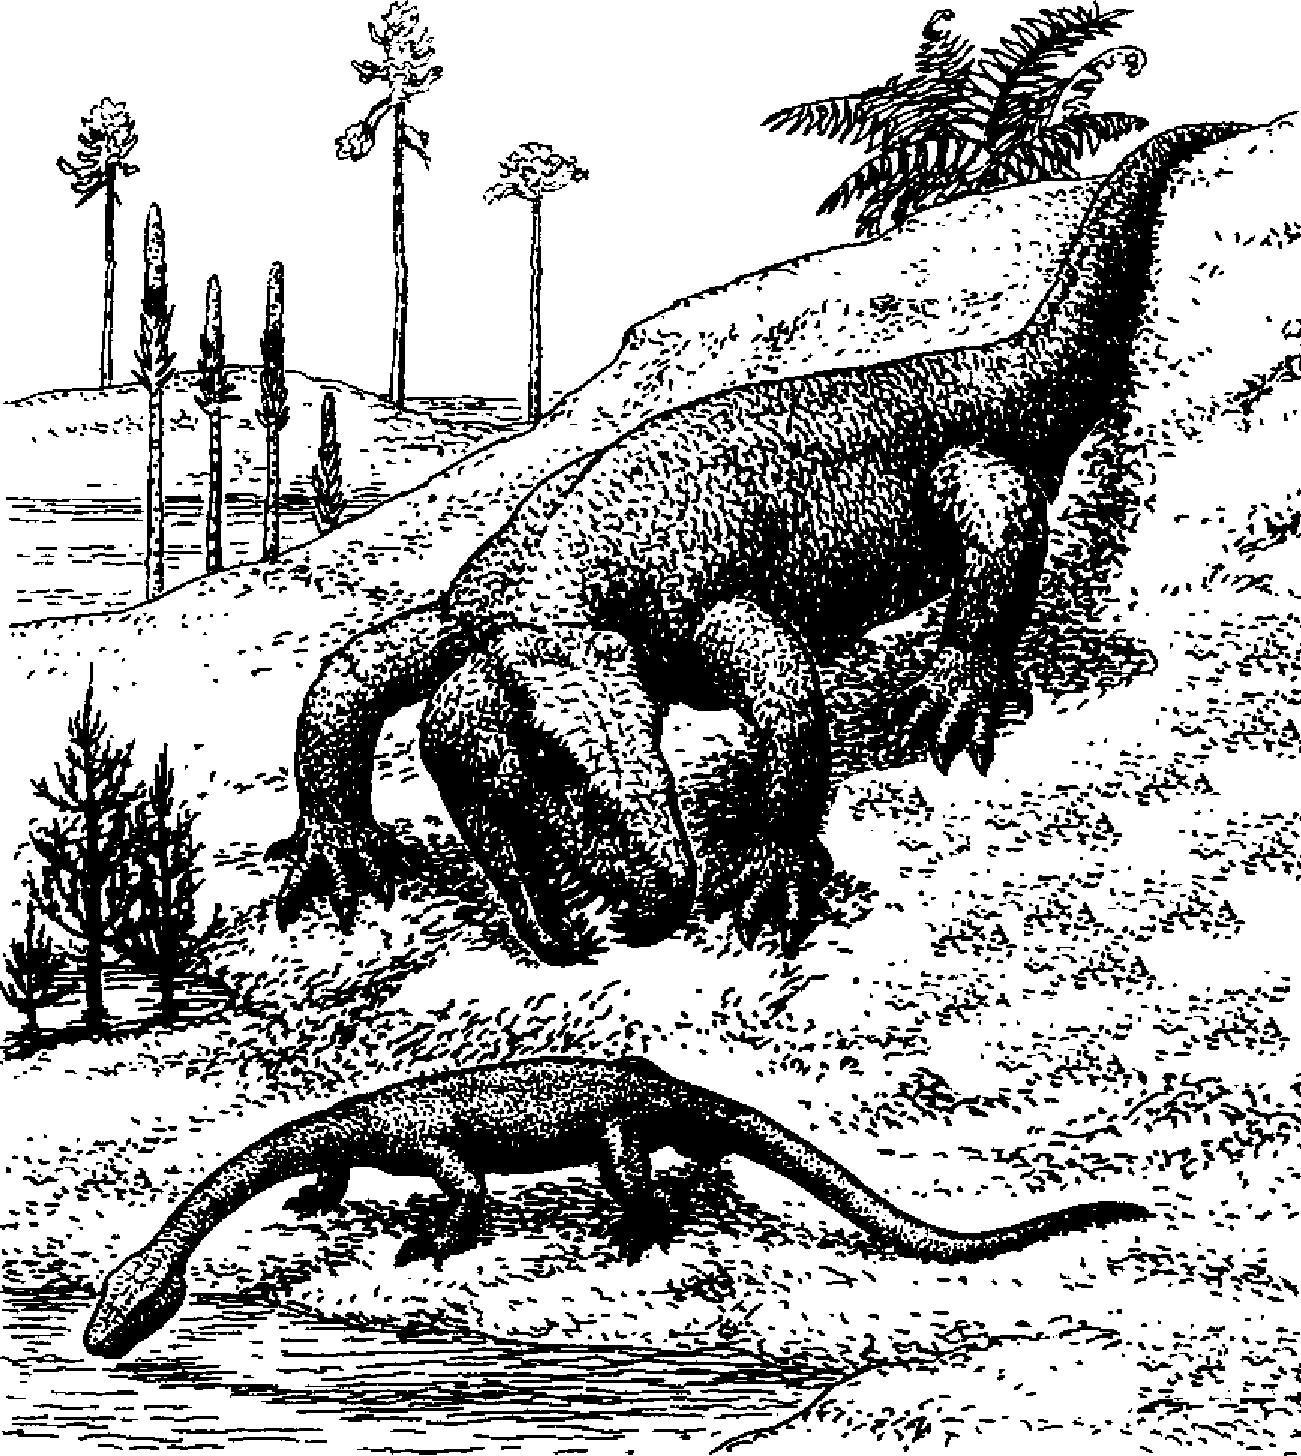 Гаряиния нападает на крупную проящерицу. Рисунок В.Д. Колганова